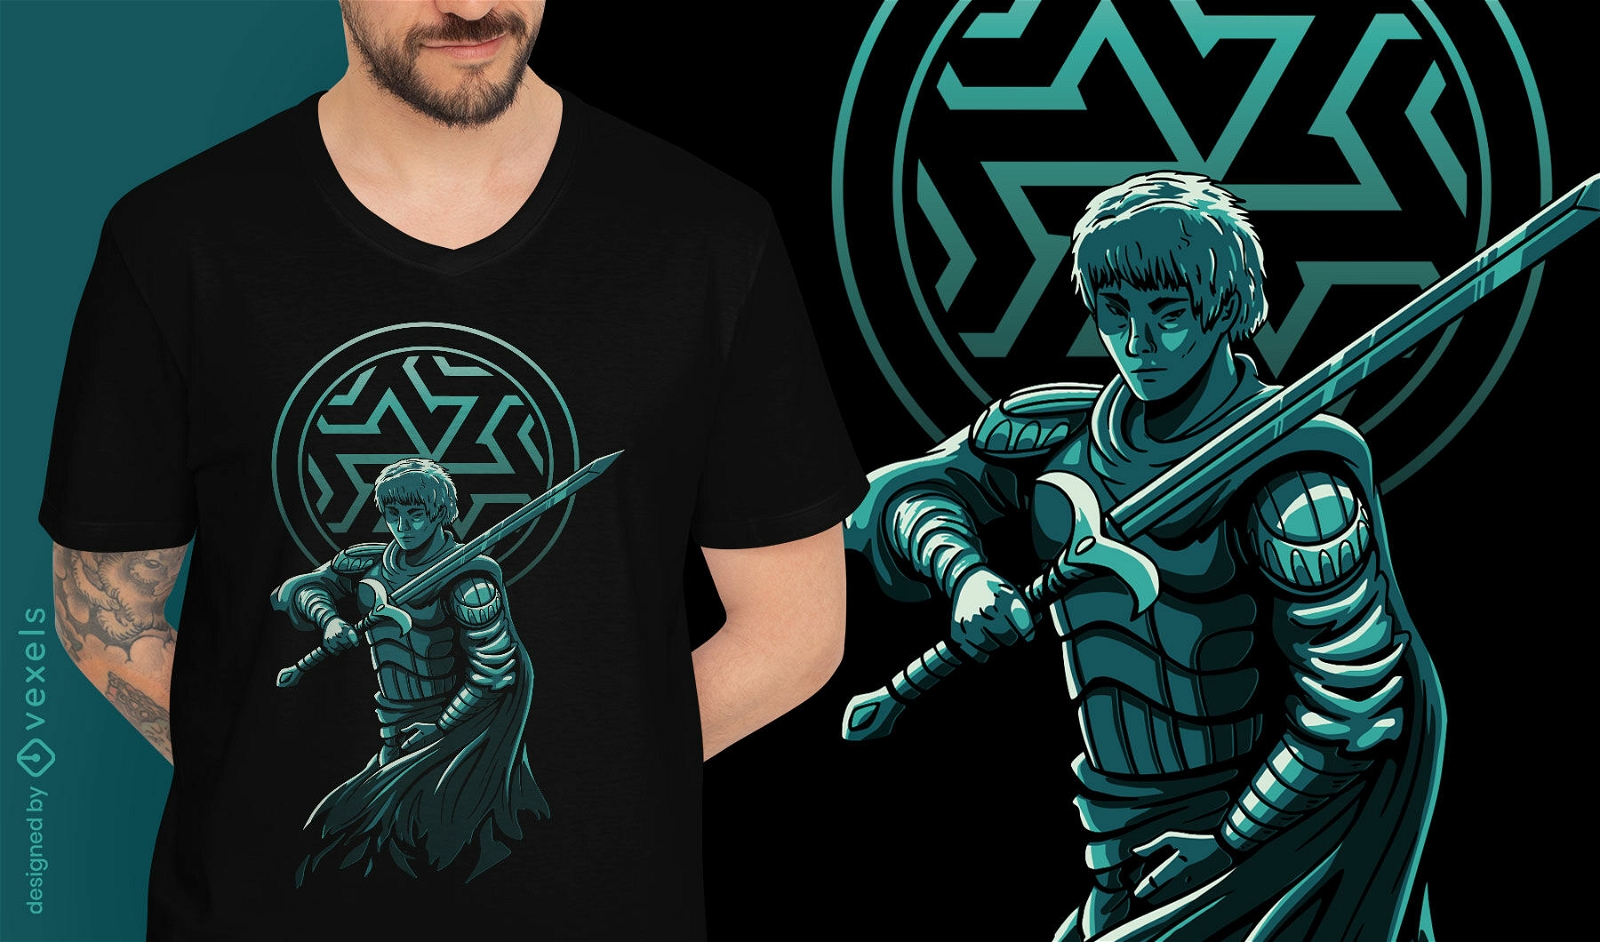 Dark fantasy knight apprentice t-shirt design